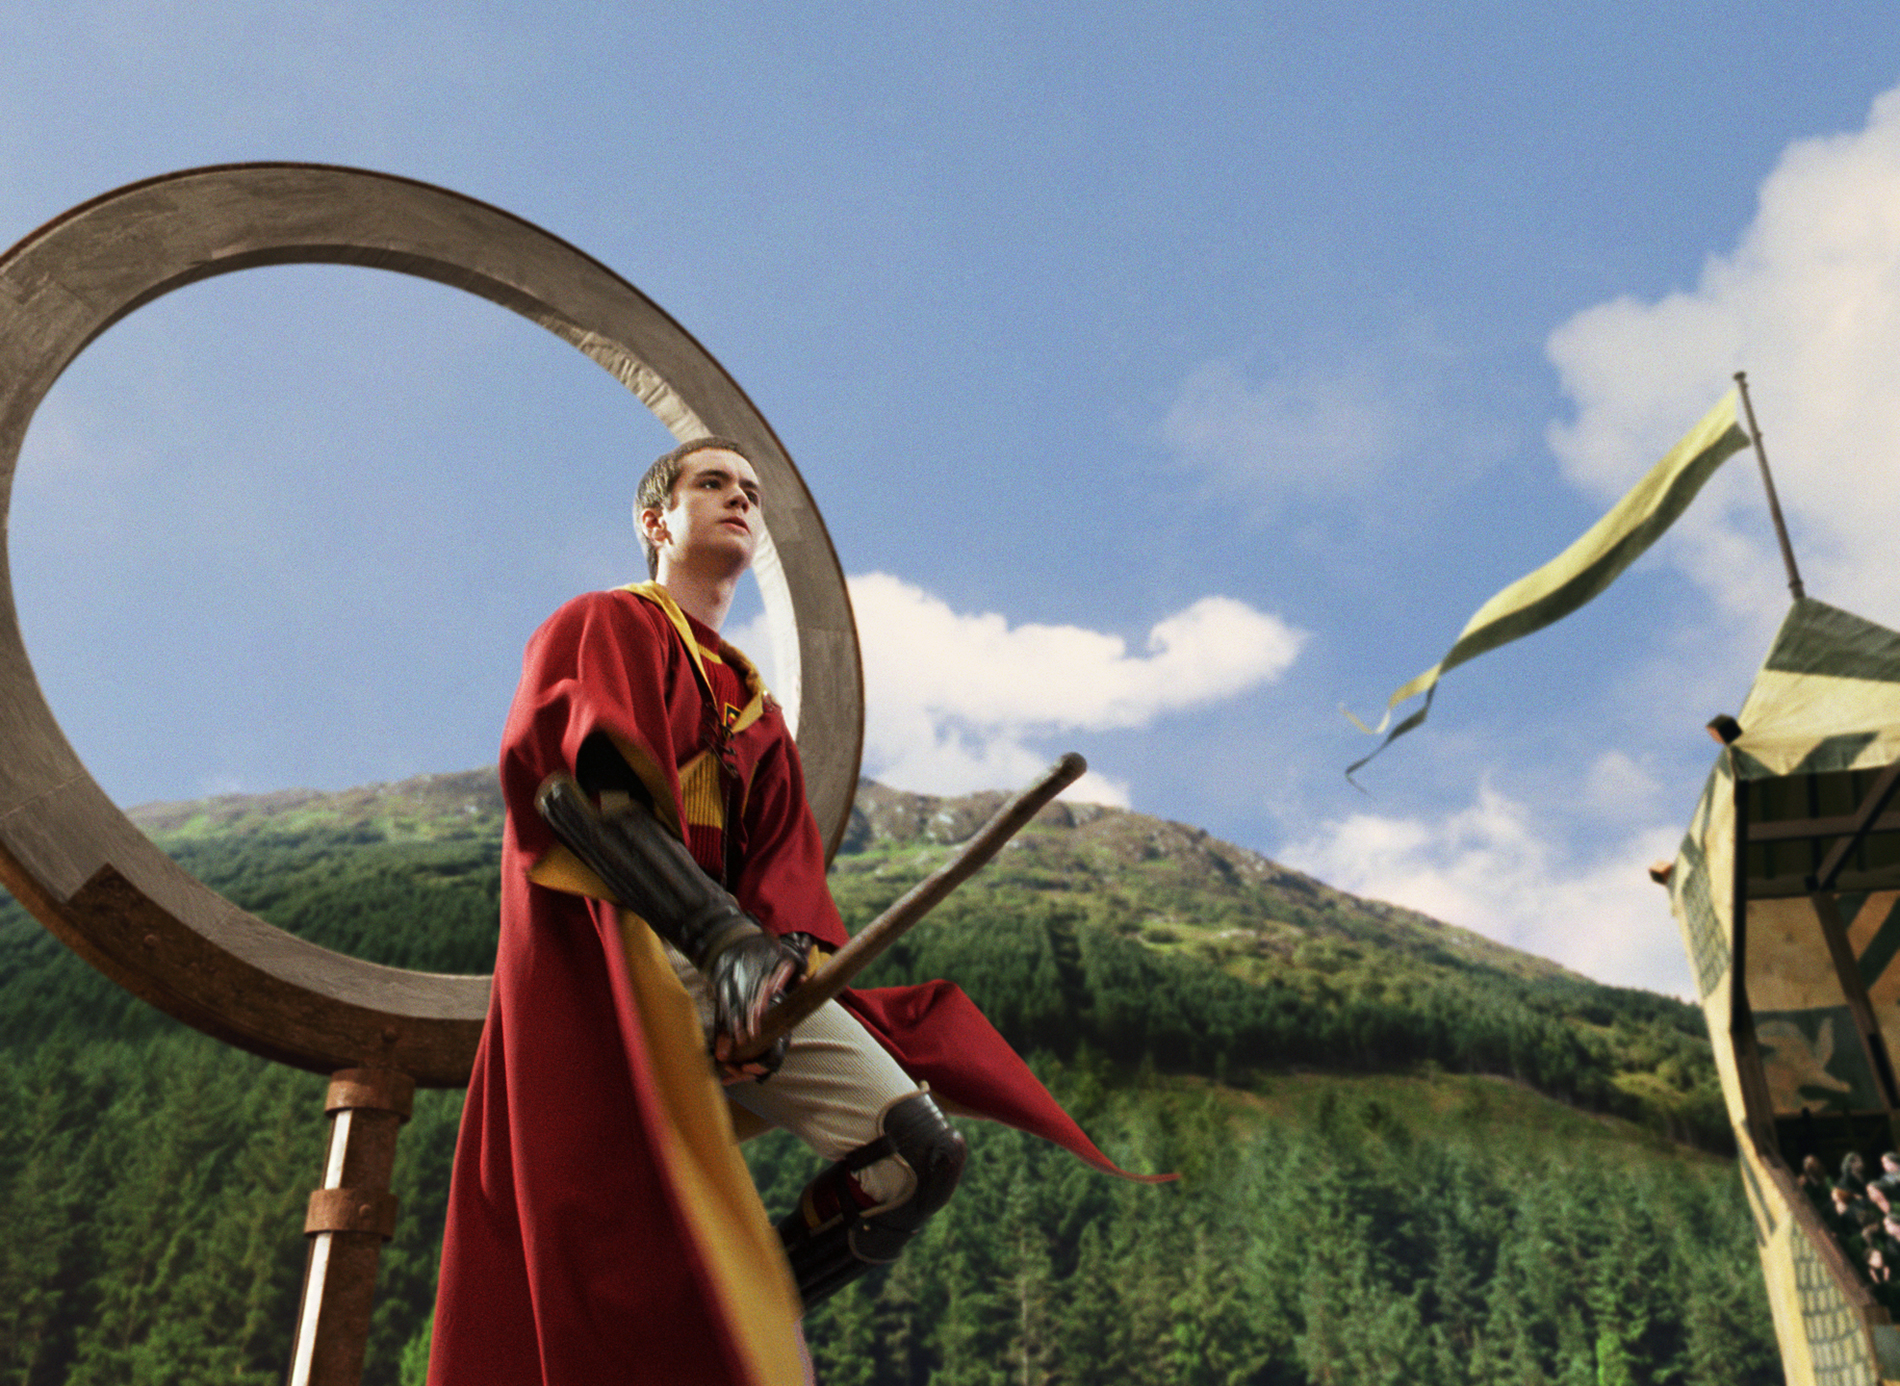 gryffindor quidditch team flying